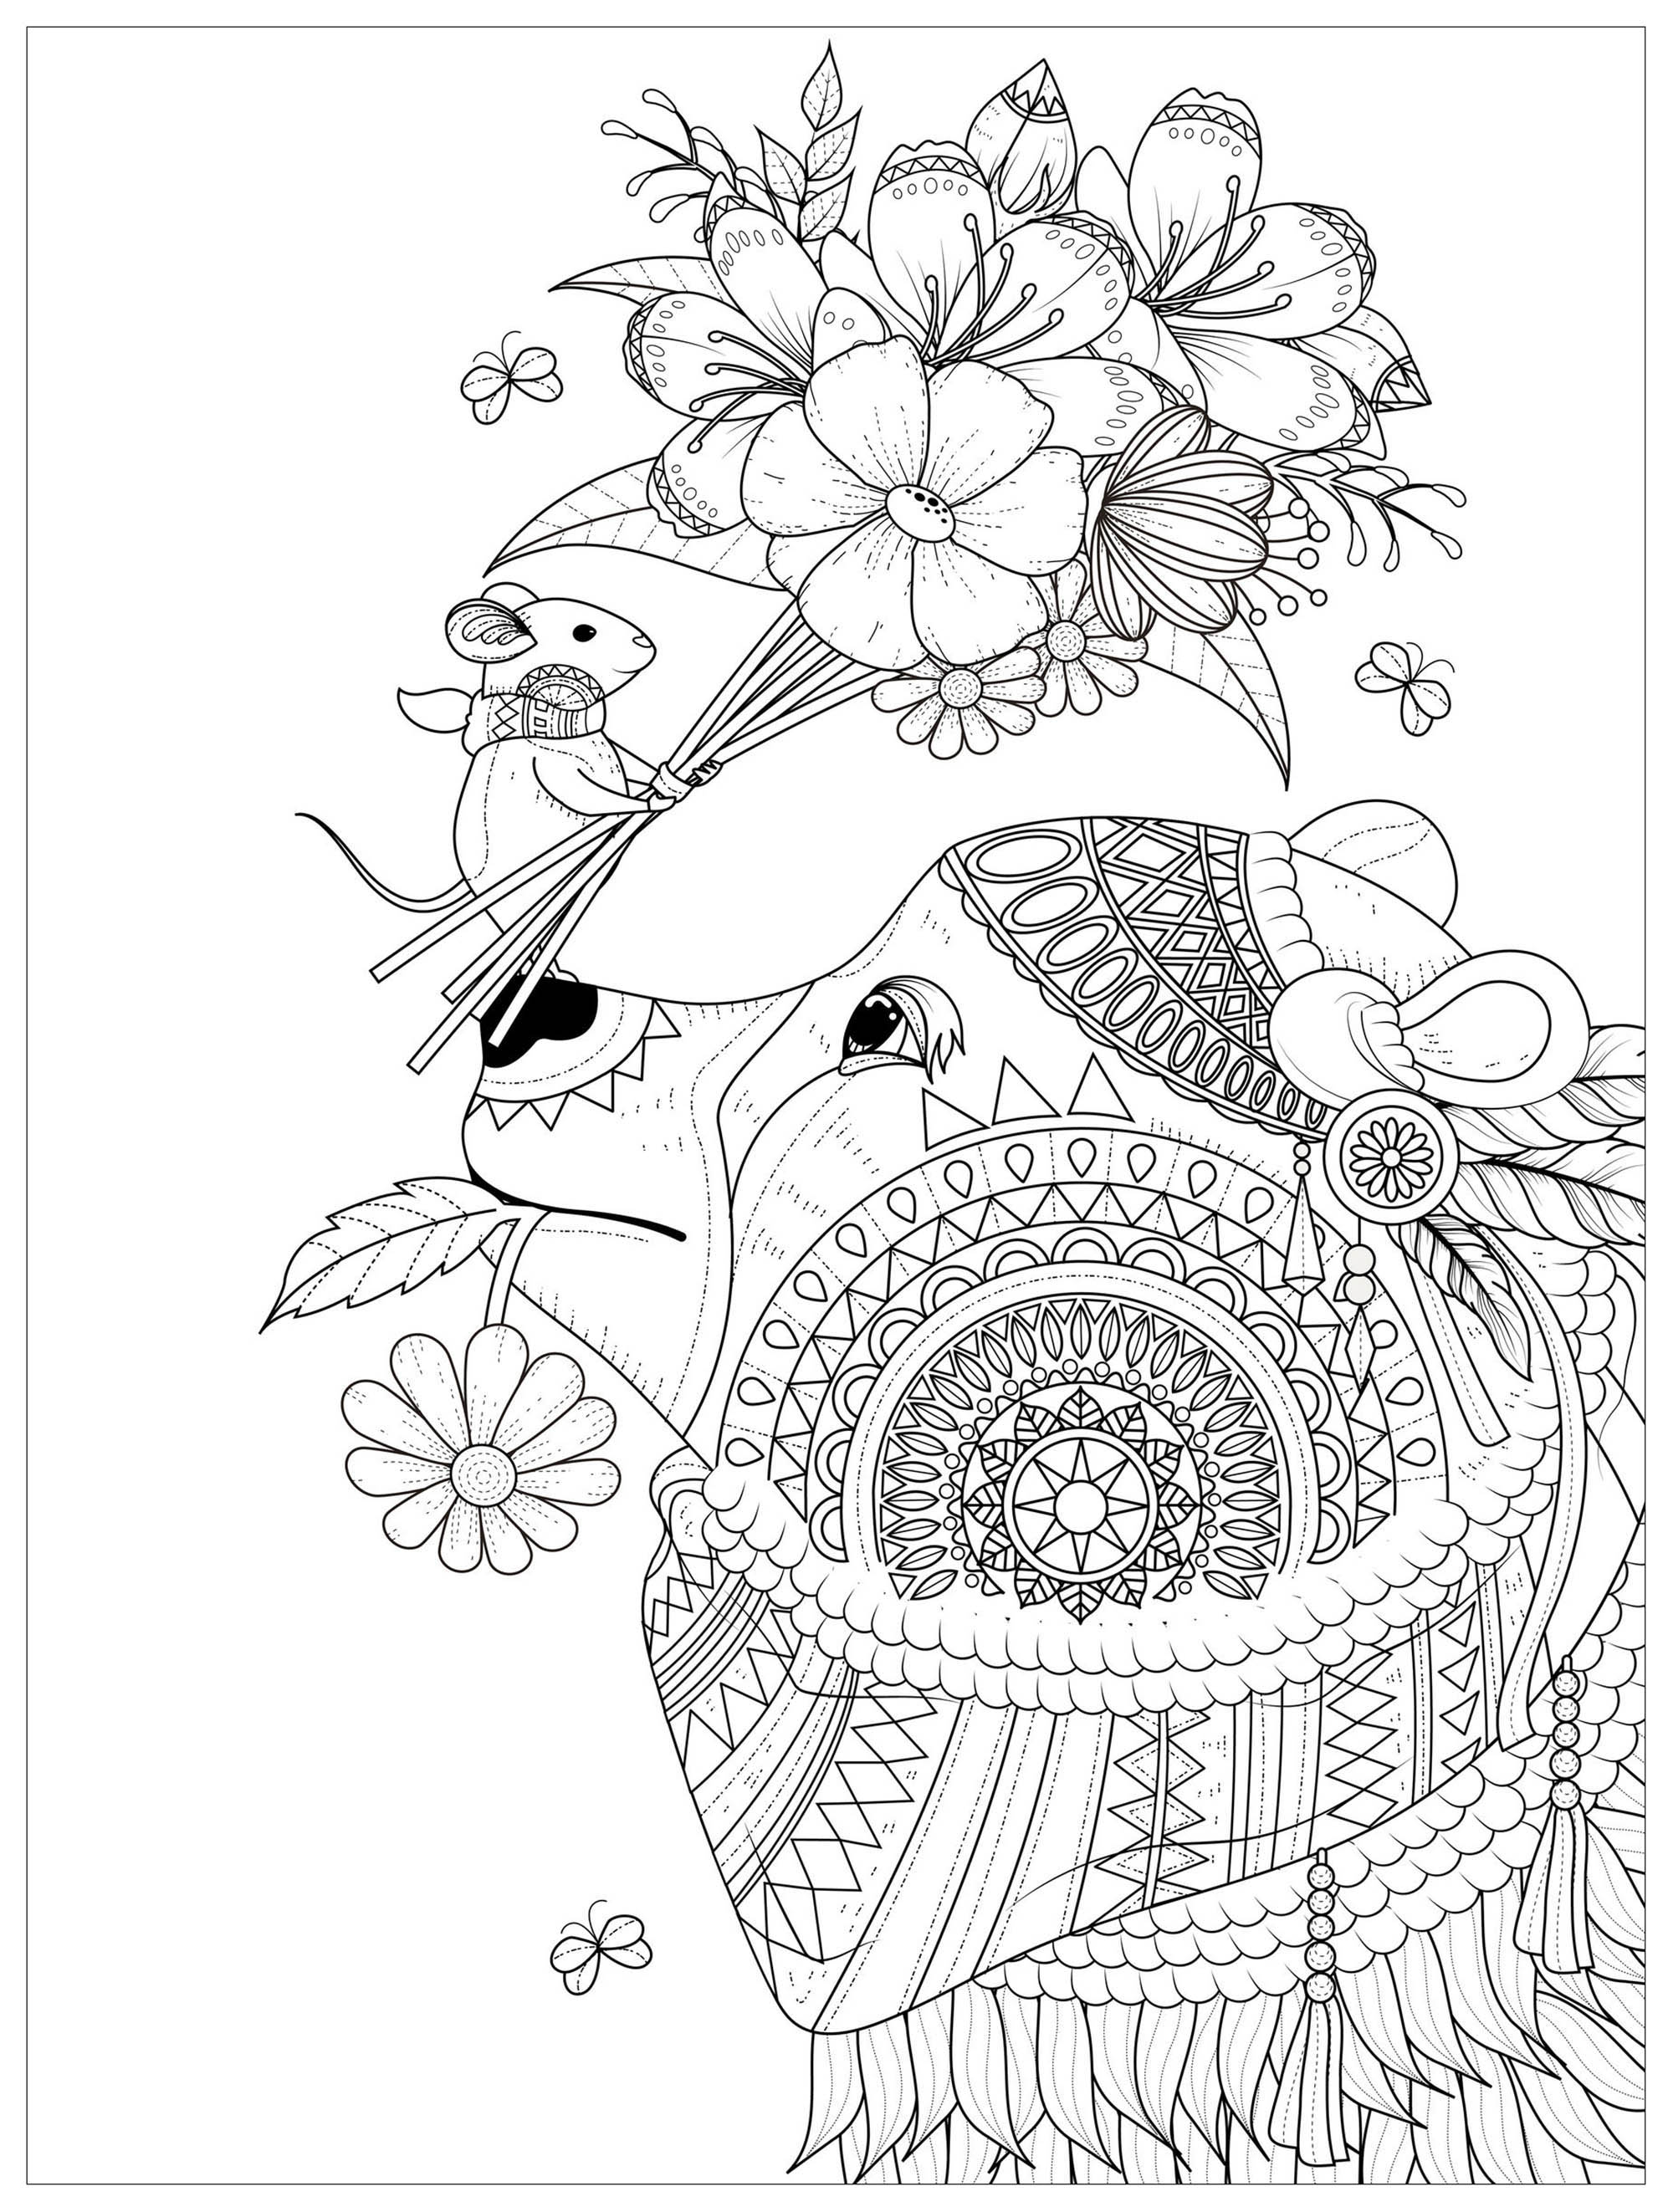 Ratoncito ofreciendo un bonito ramo de flores a un oso. Increíbles y elegantes dibujos para colorear, Origen : 123rf   Artista : Kchung